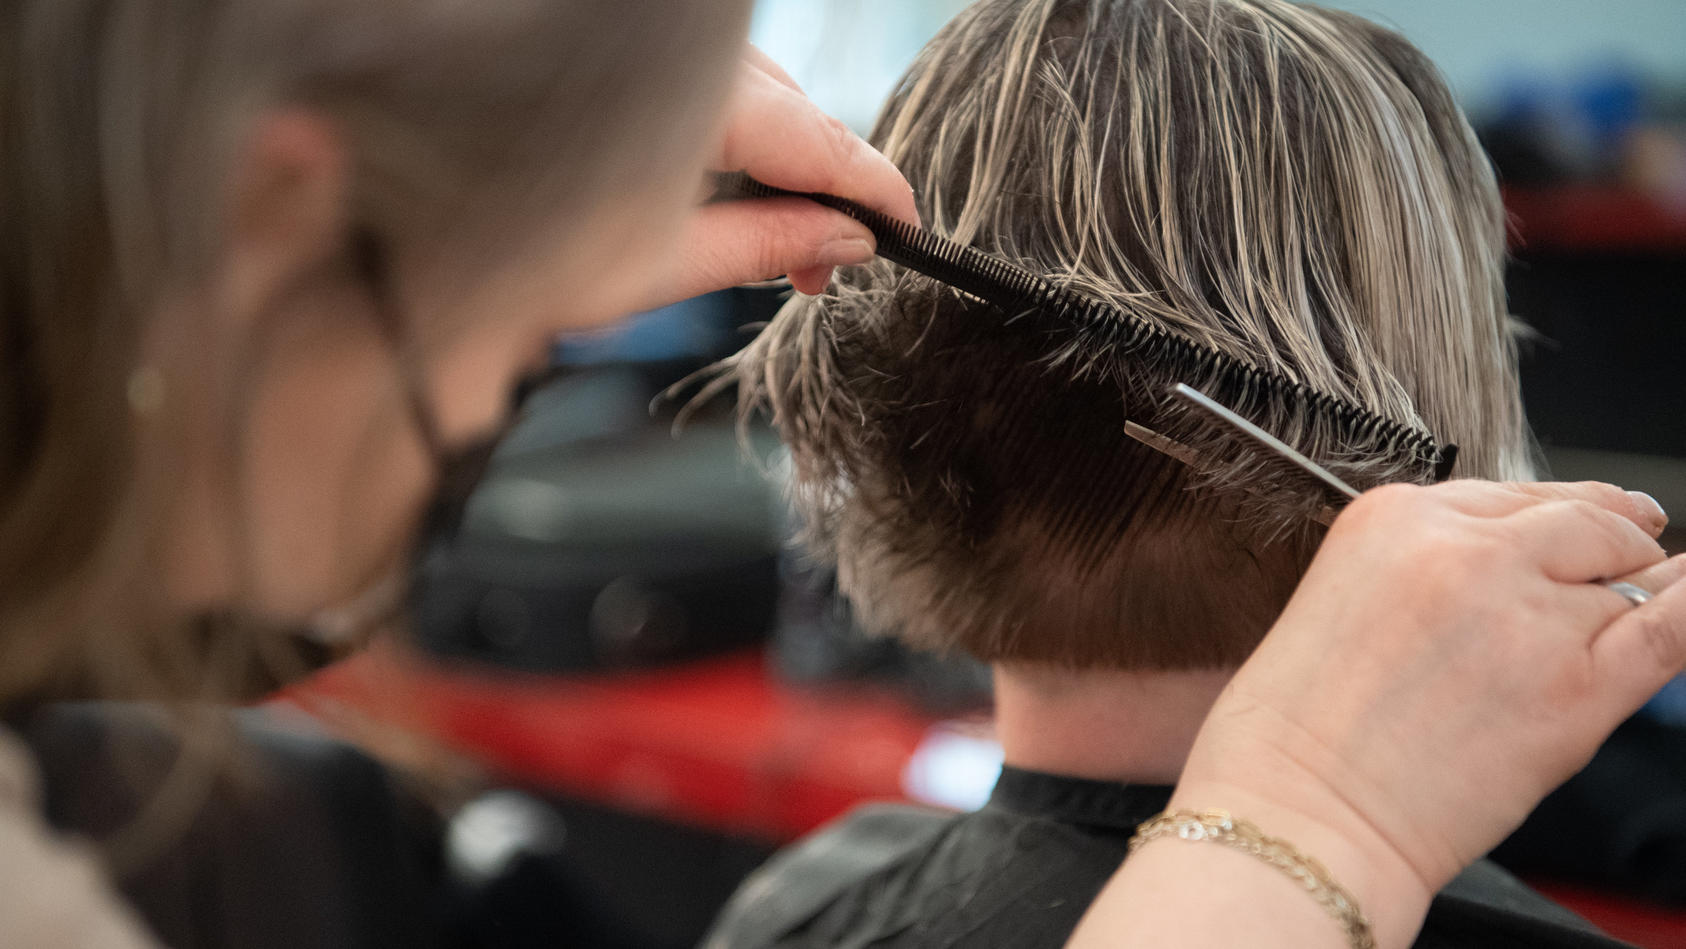 ARCHIV - 30.04.2021, Berlin: Eine Friseurin schneidet einer Kundin die Haare in einem Friseursalon. (zu dpa «Statistisches Bundesamt zu Beschäftigten und Umsatz im Handwerk, 2. Quartal 2021») Foto: Magdalena Troendle/dpa +++ dpa-Bildfunk +++